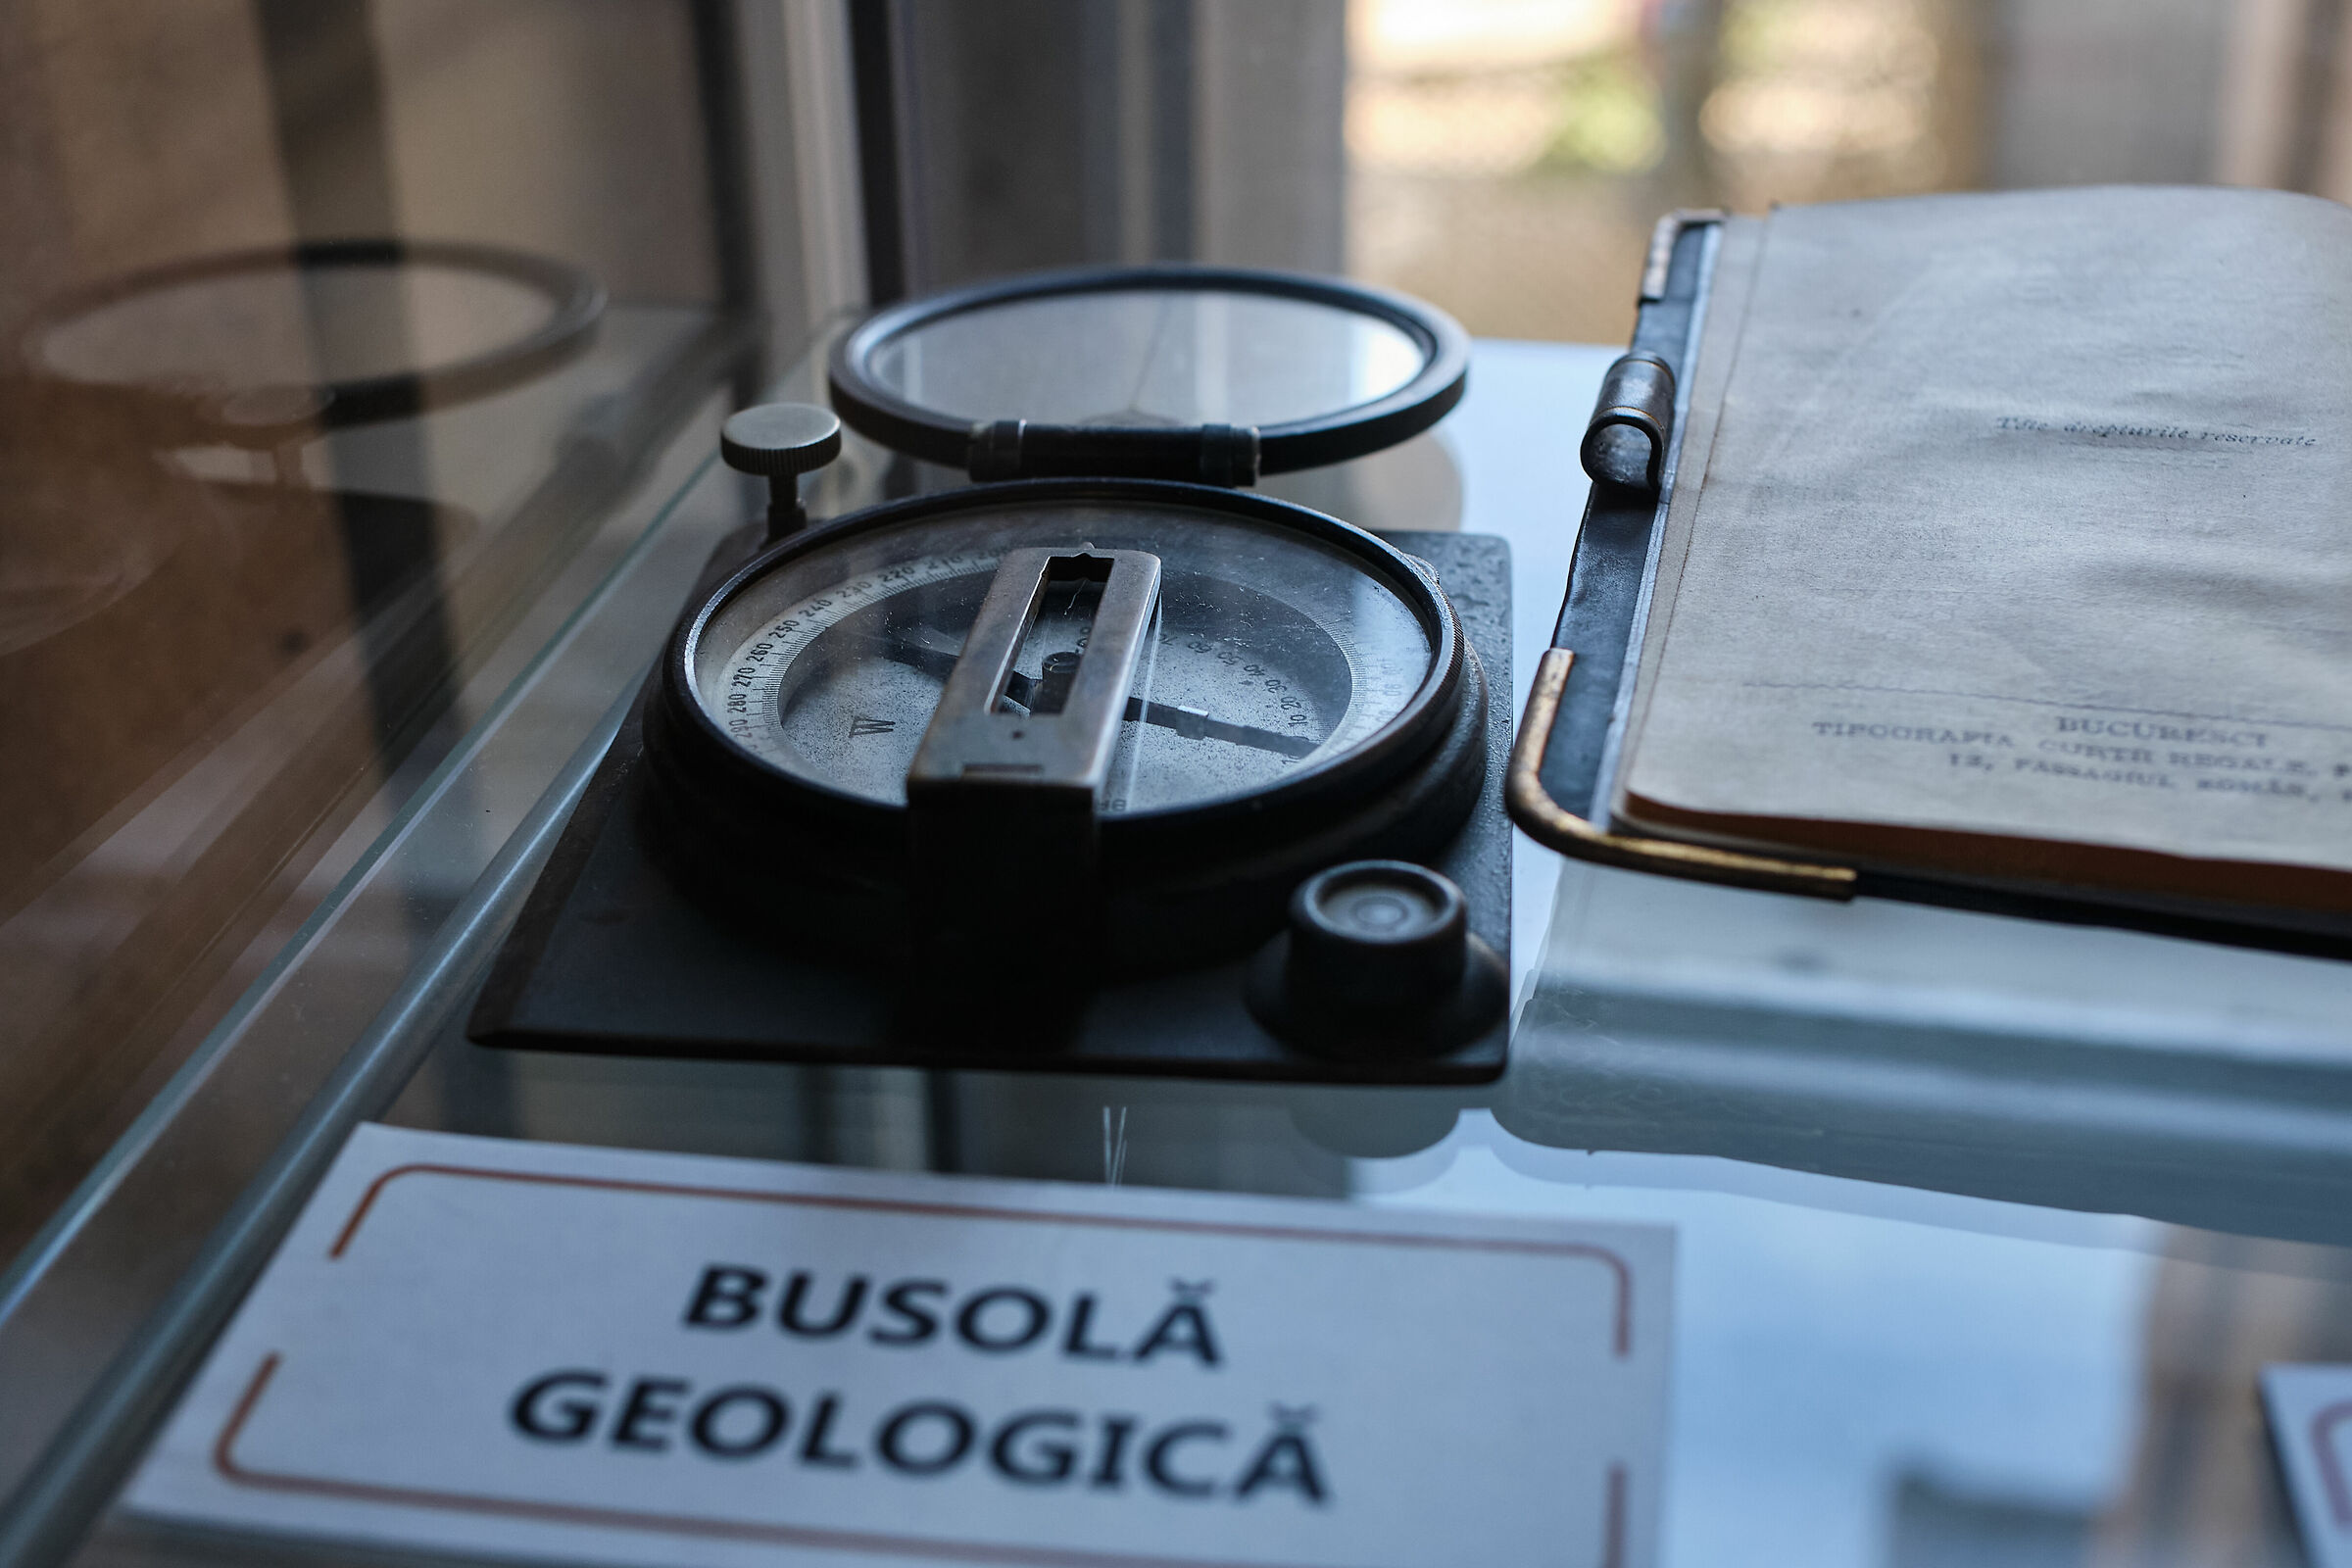 Vecchio strumento principale della bussola geologica prima dell'era GPS...